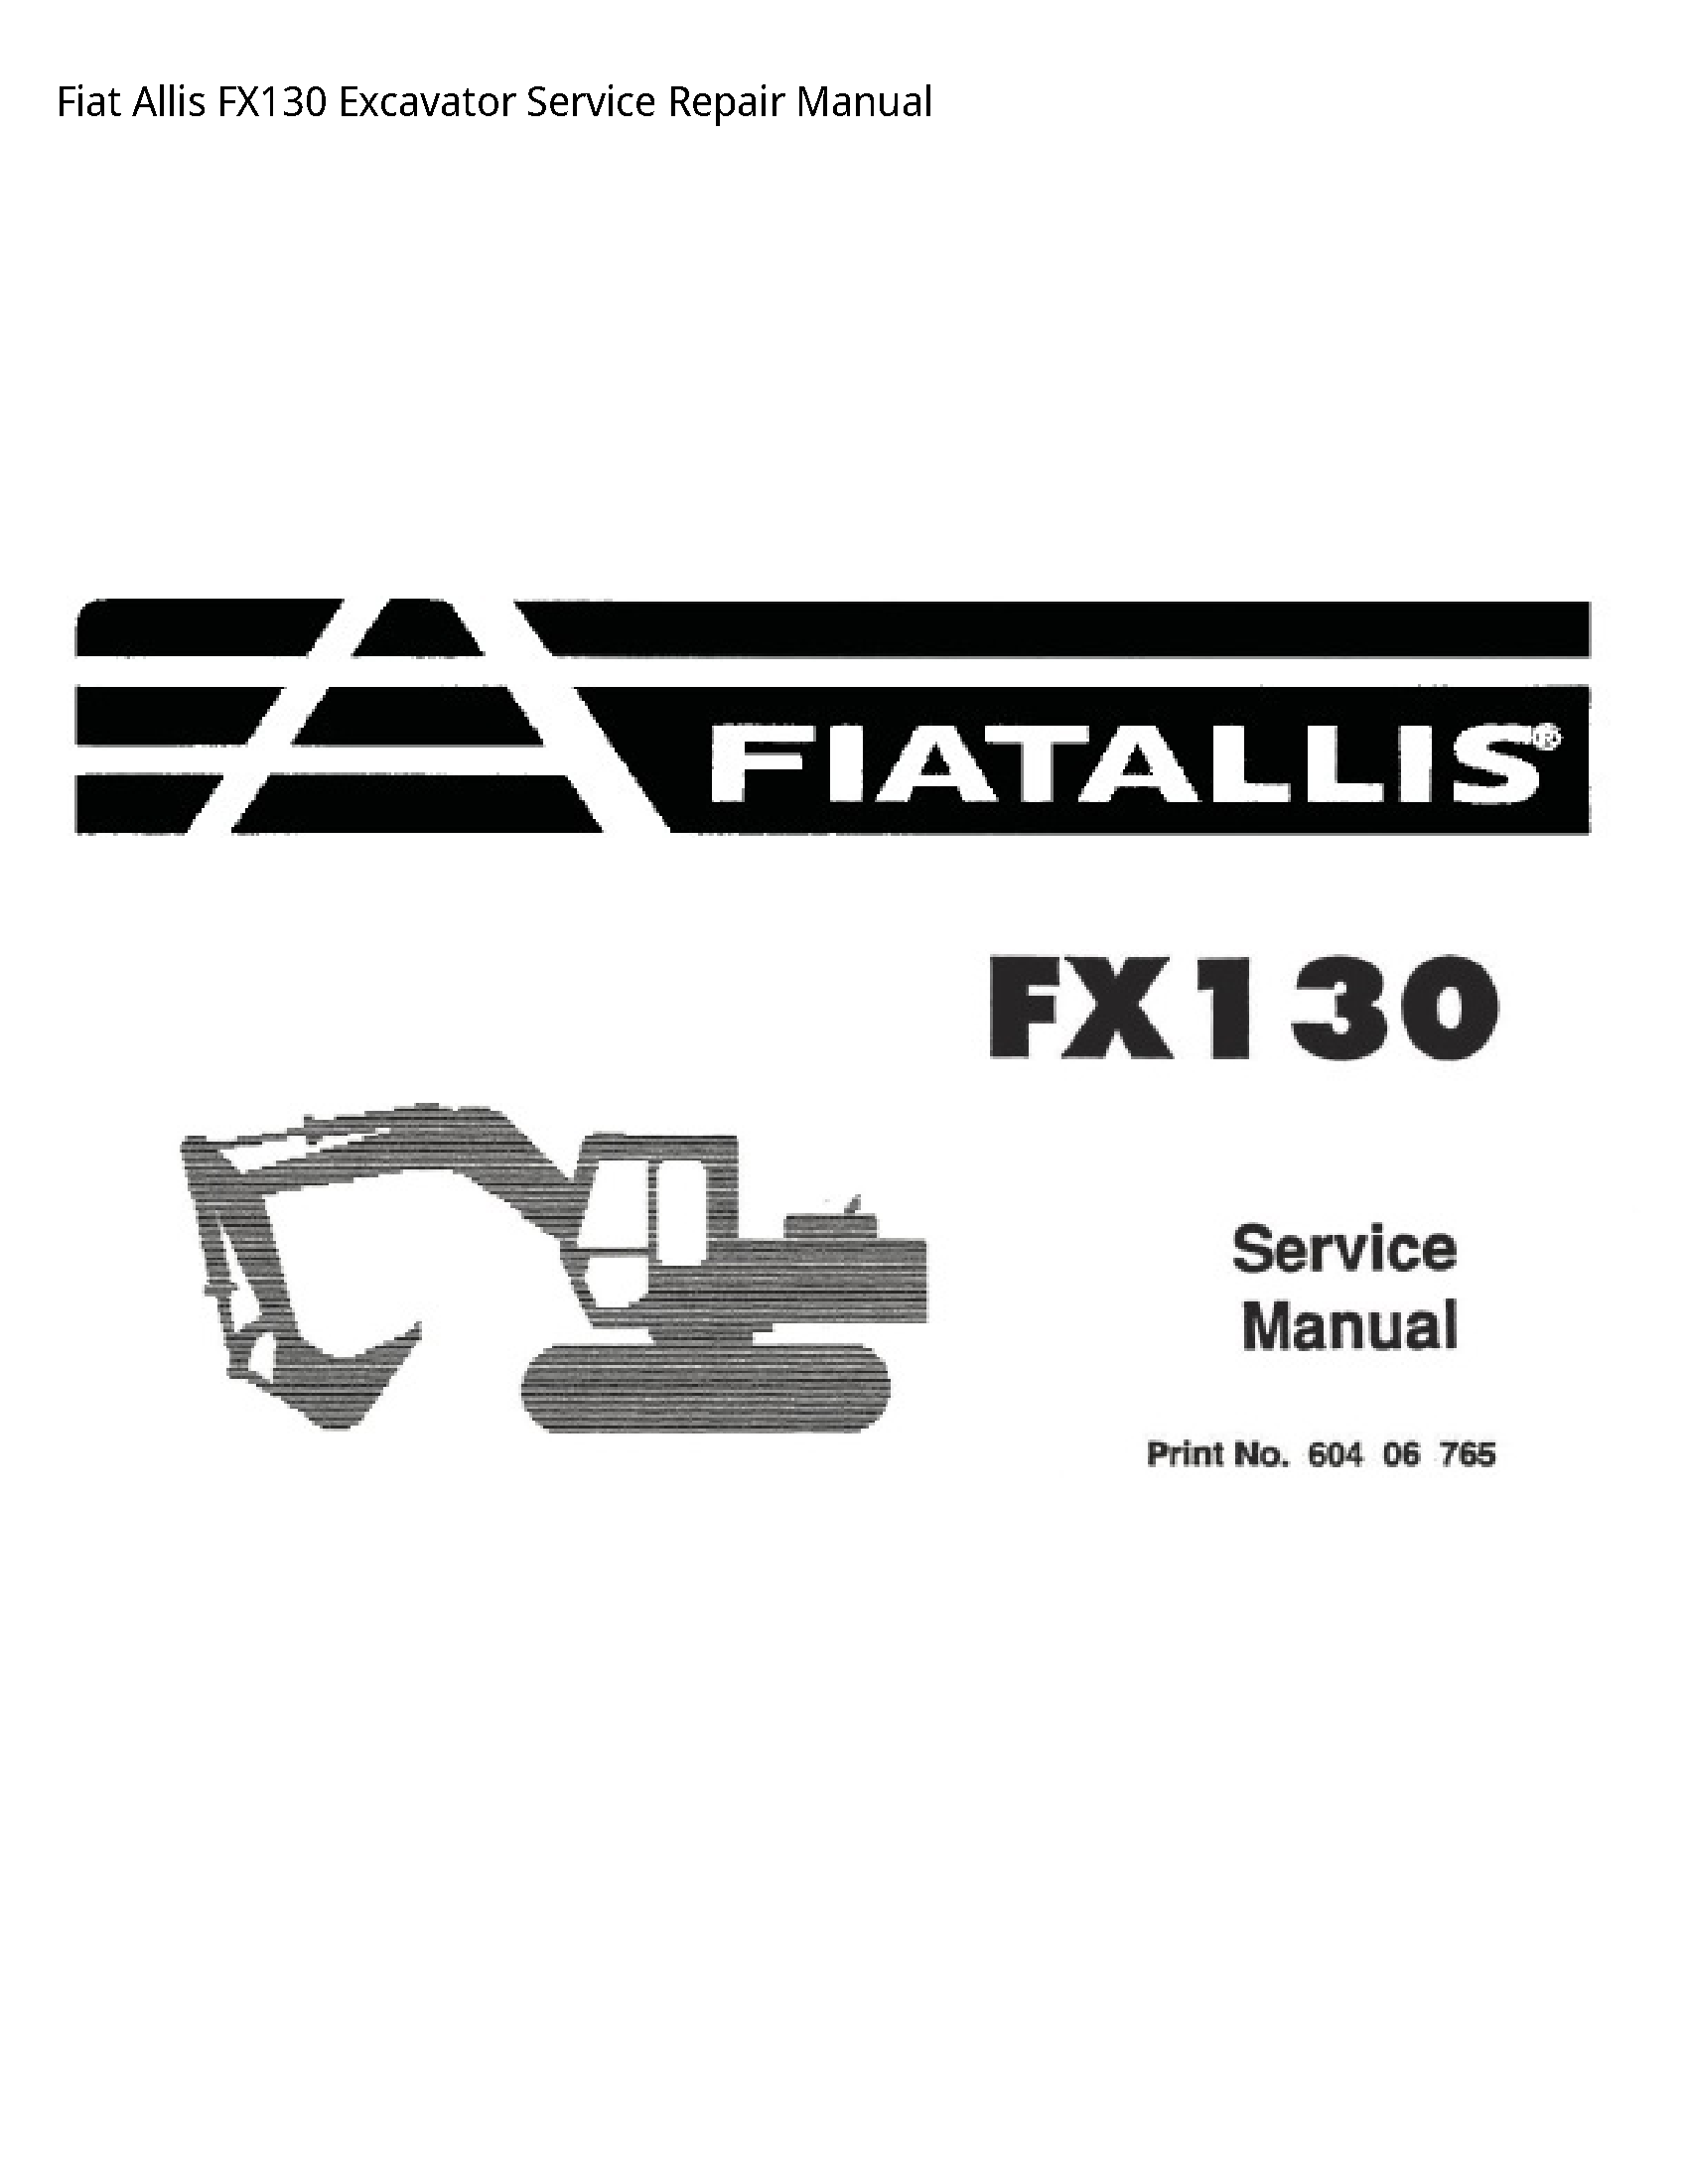 Fiat Allis FX130 Excavator manual